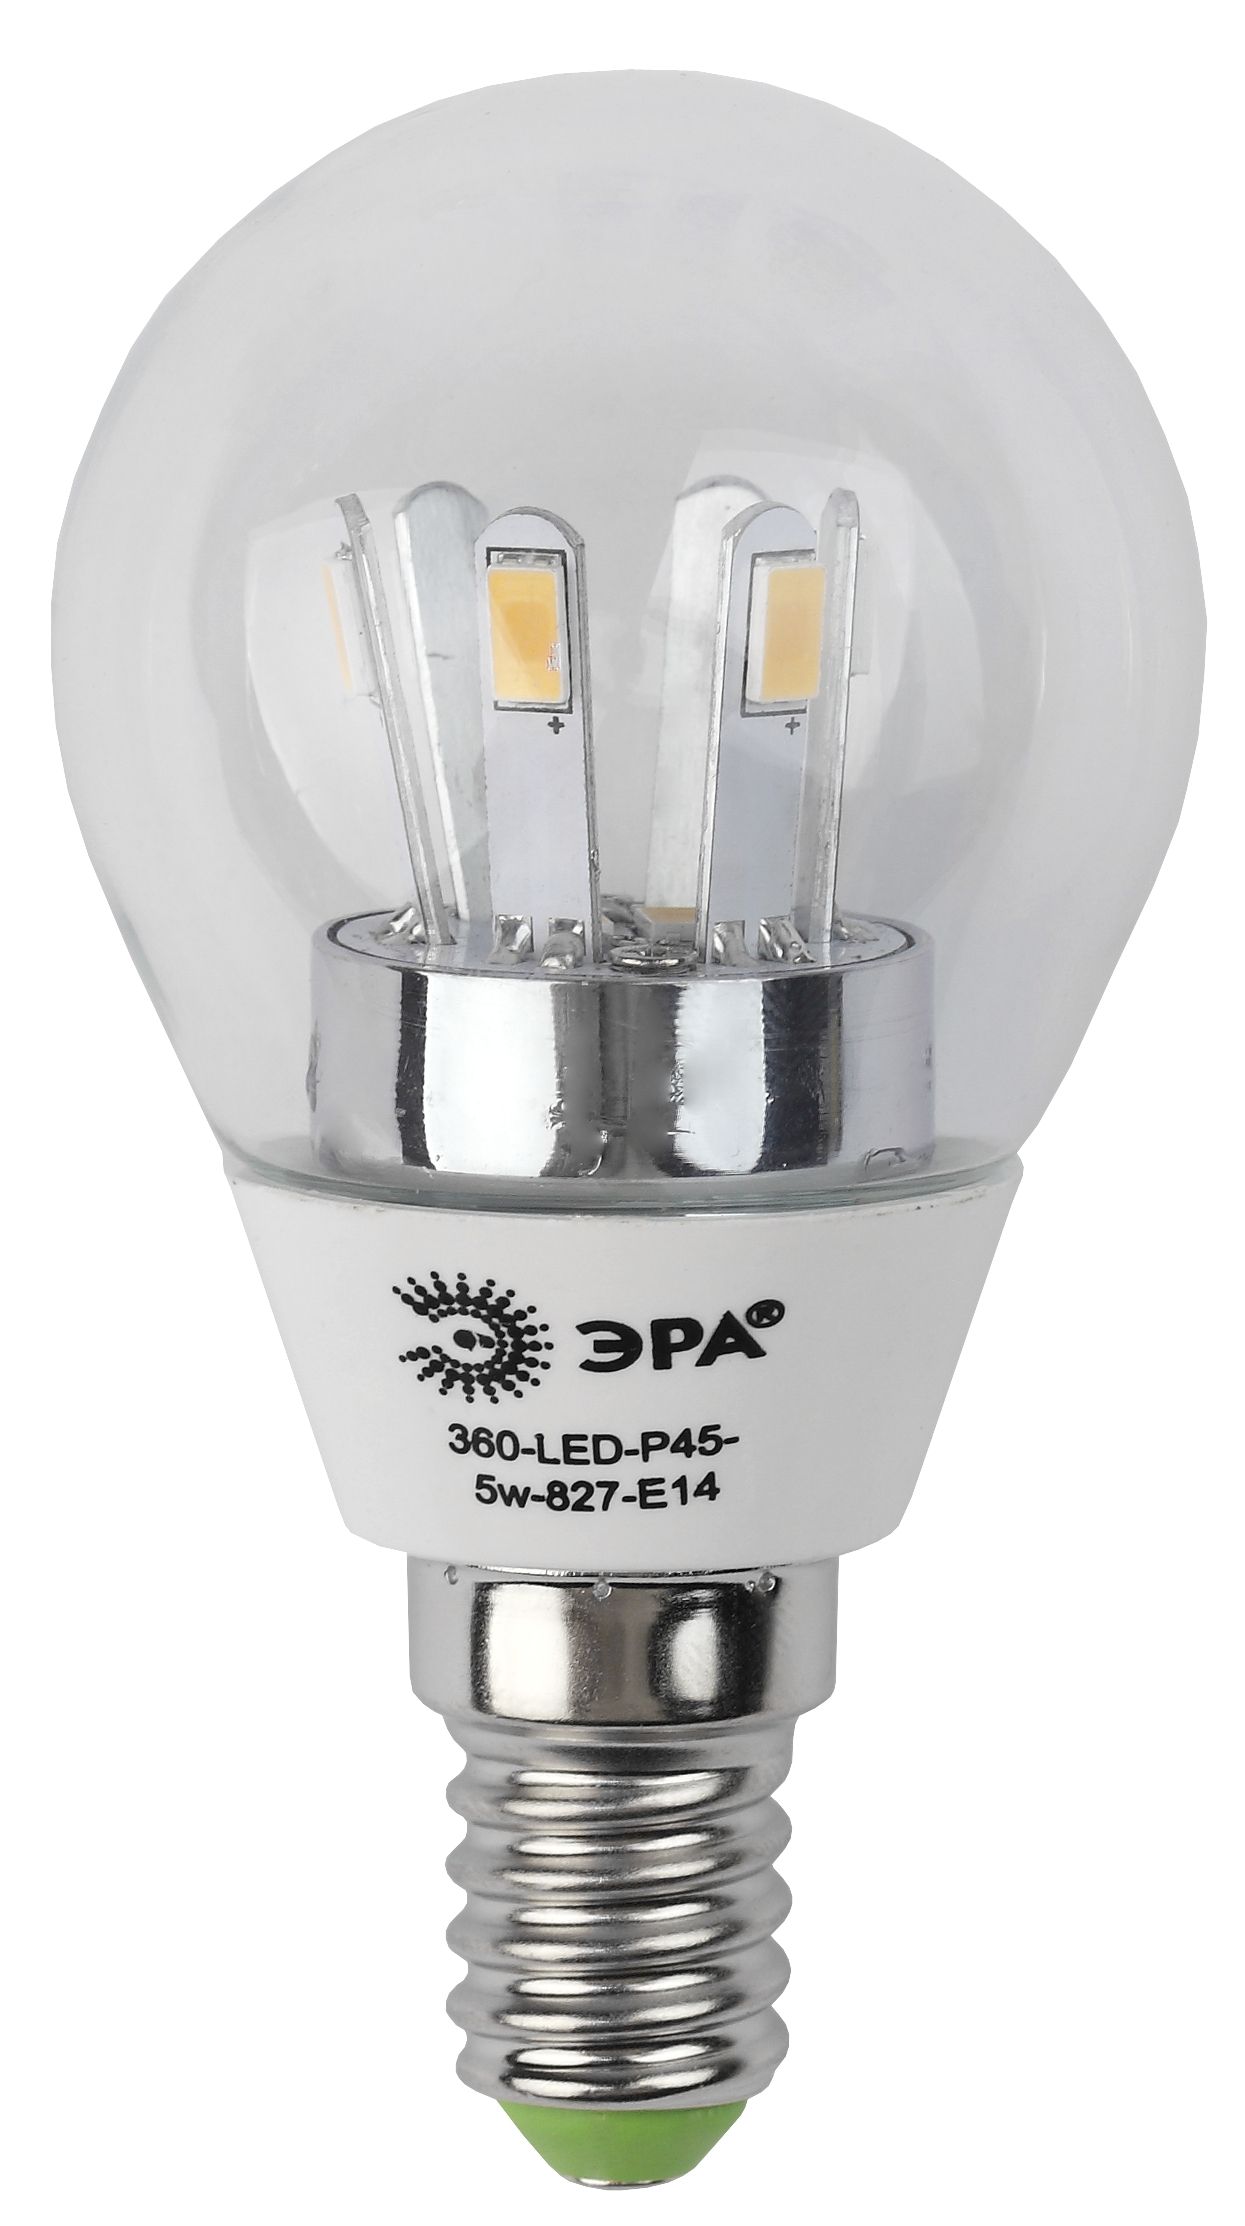 Лампа светодиодная ЭРА 360-LED P45-5w-827-E14 (10/50/2400)